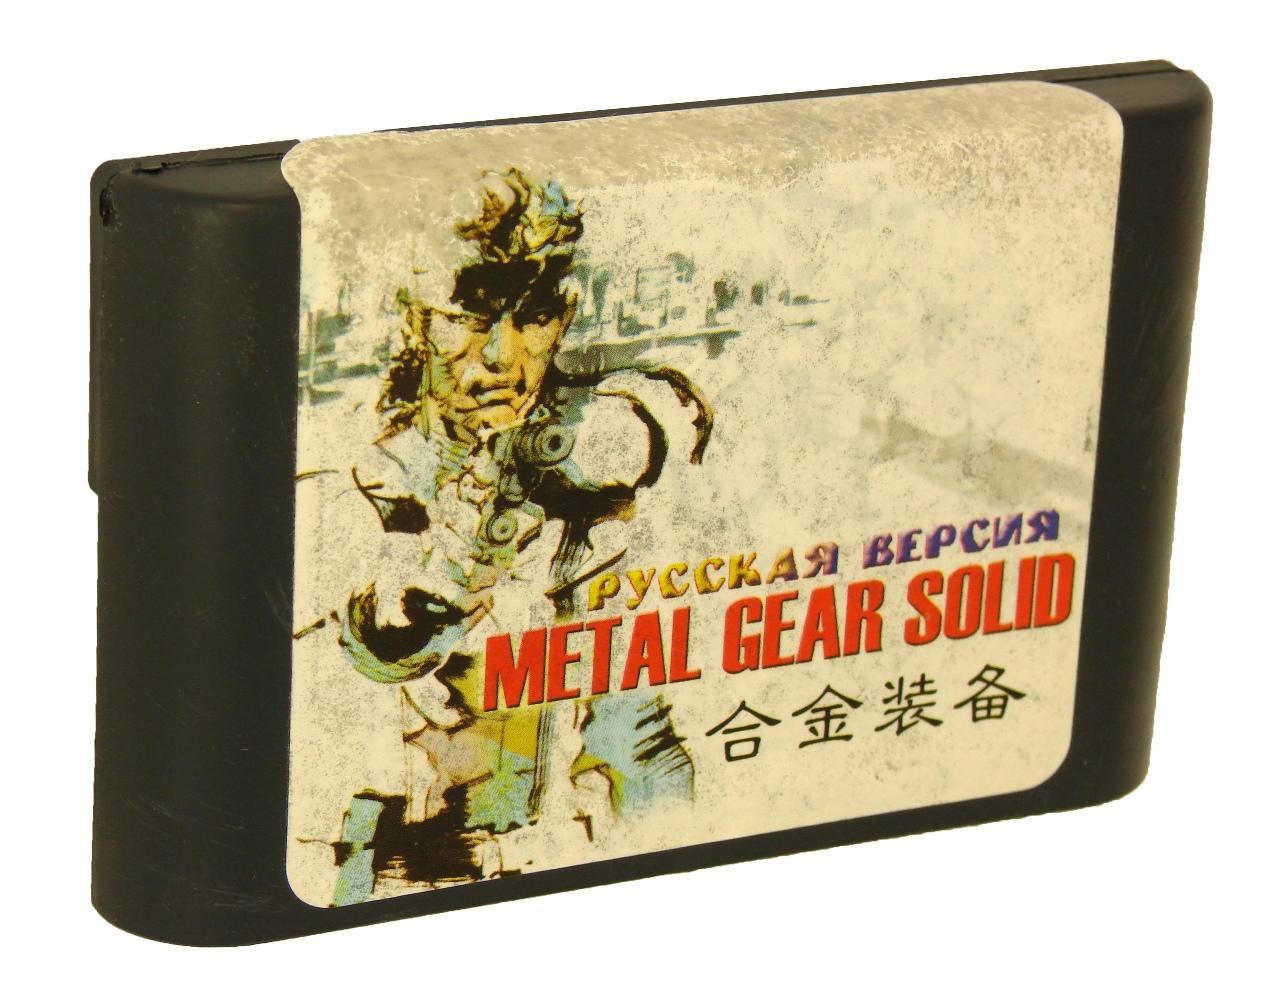   Sega Metal Gear Solid (Sega)